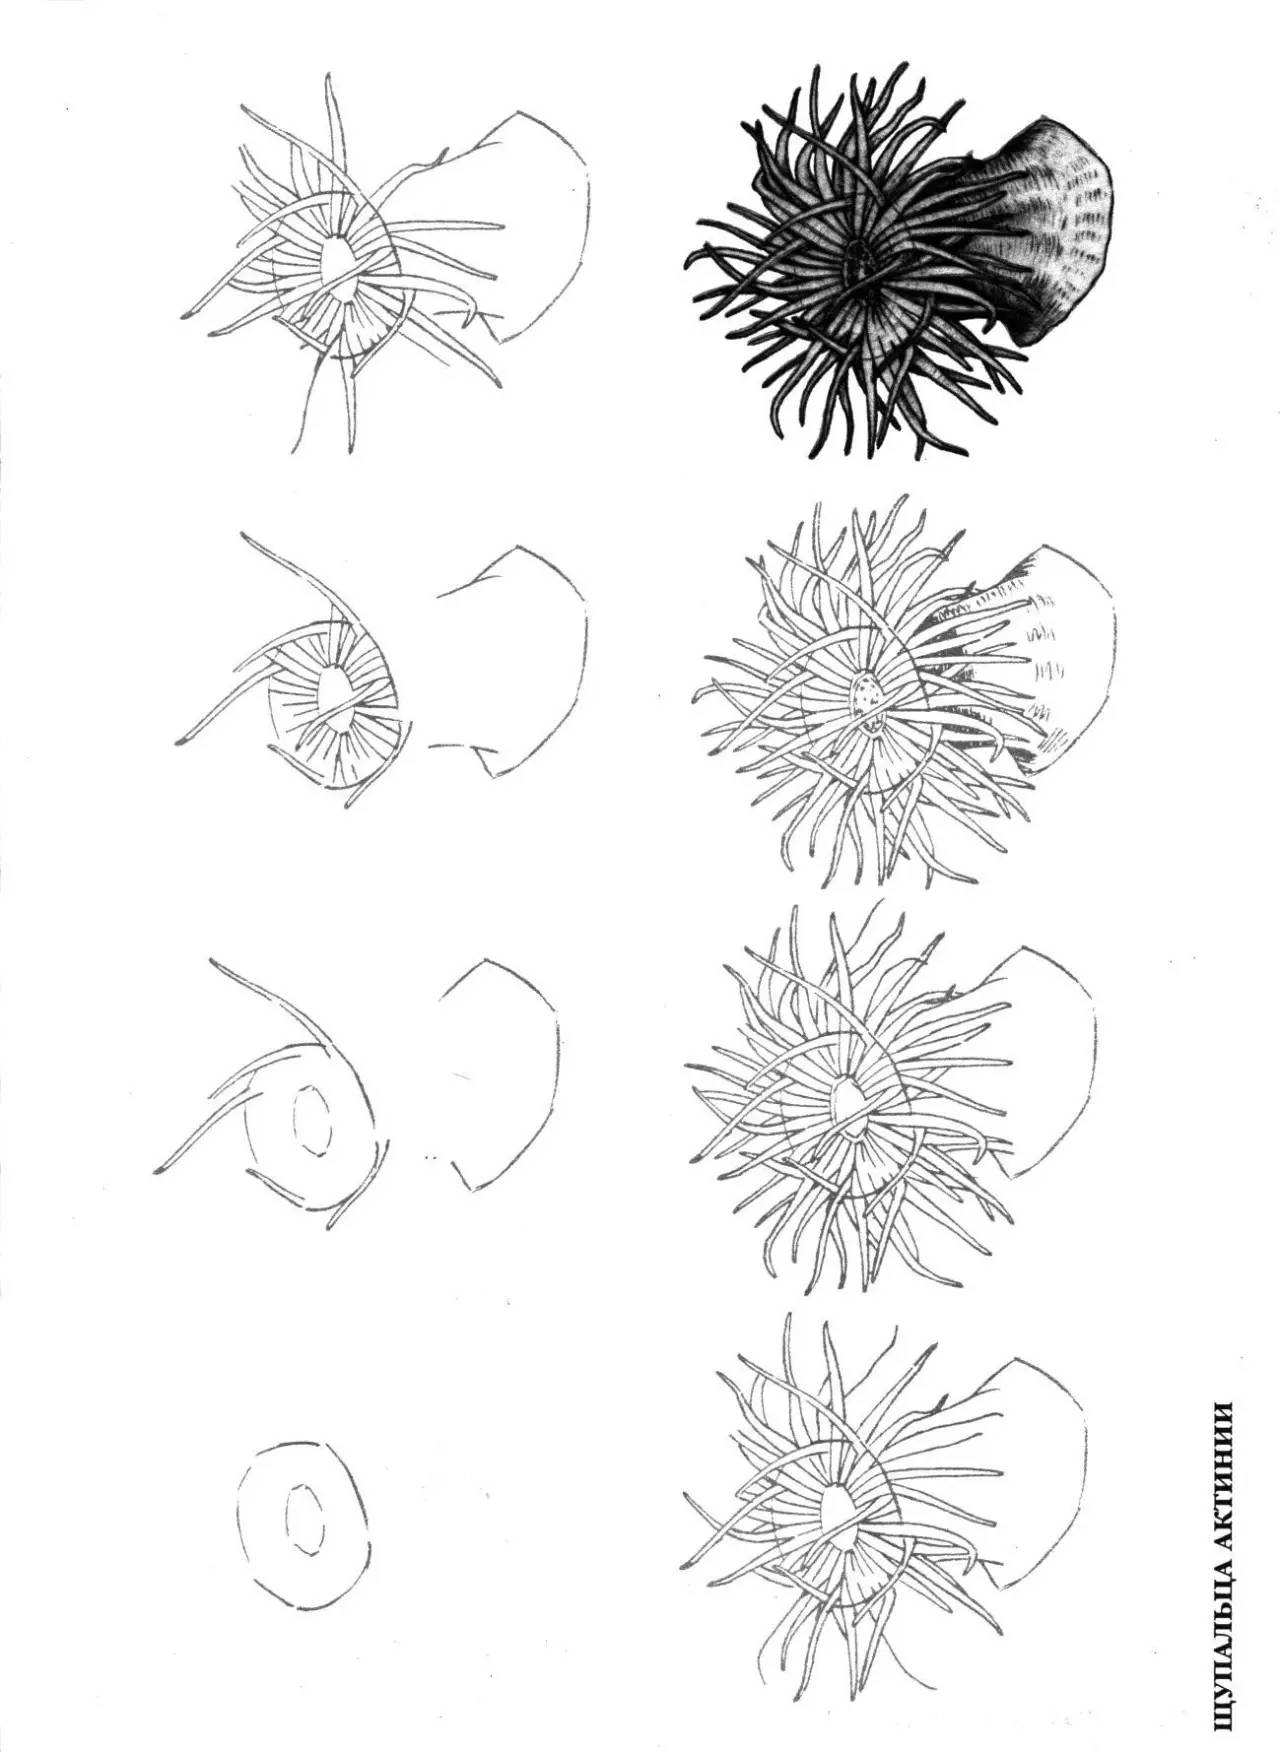 画简单点,50种海洋生物的画法!